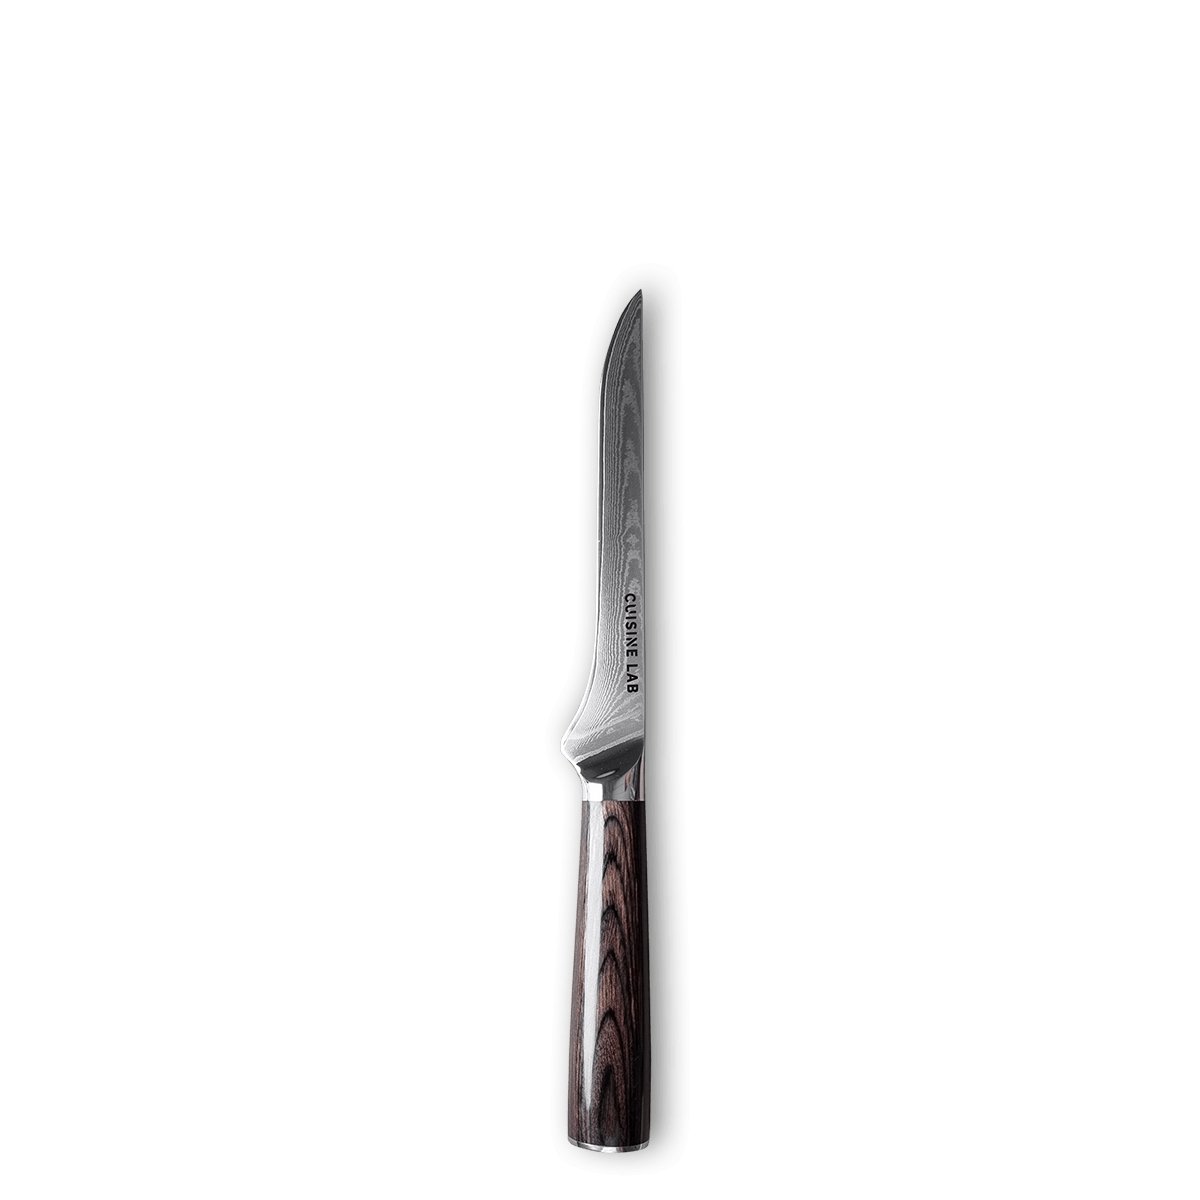 Classic Udbenerkniv - 145 mm. - Kitchen Knives - cuisinelab